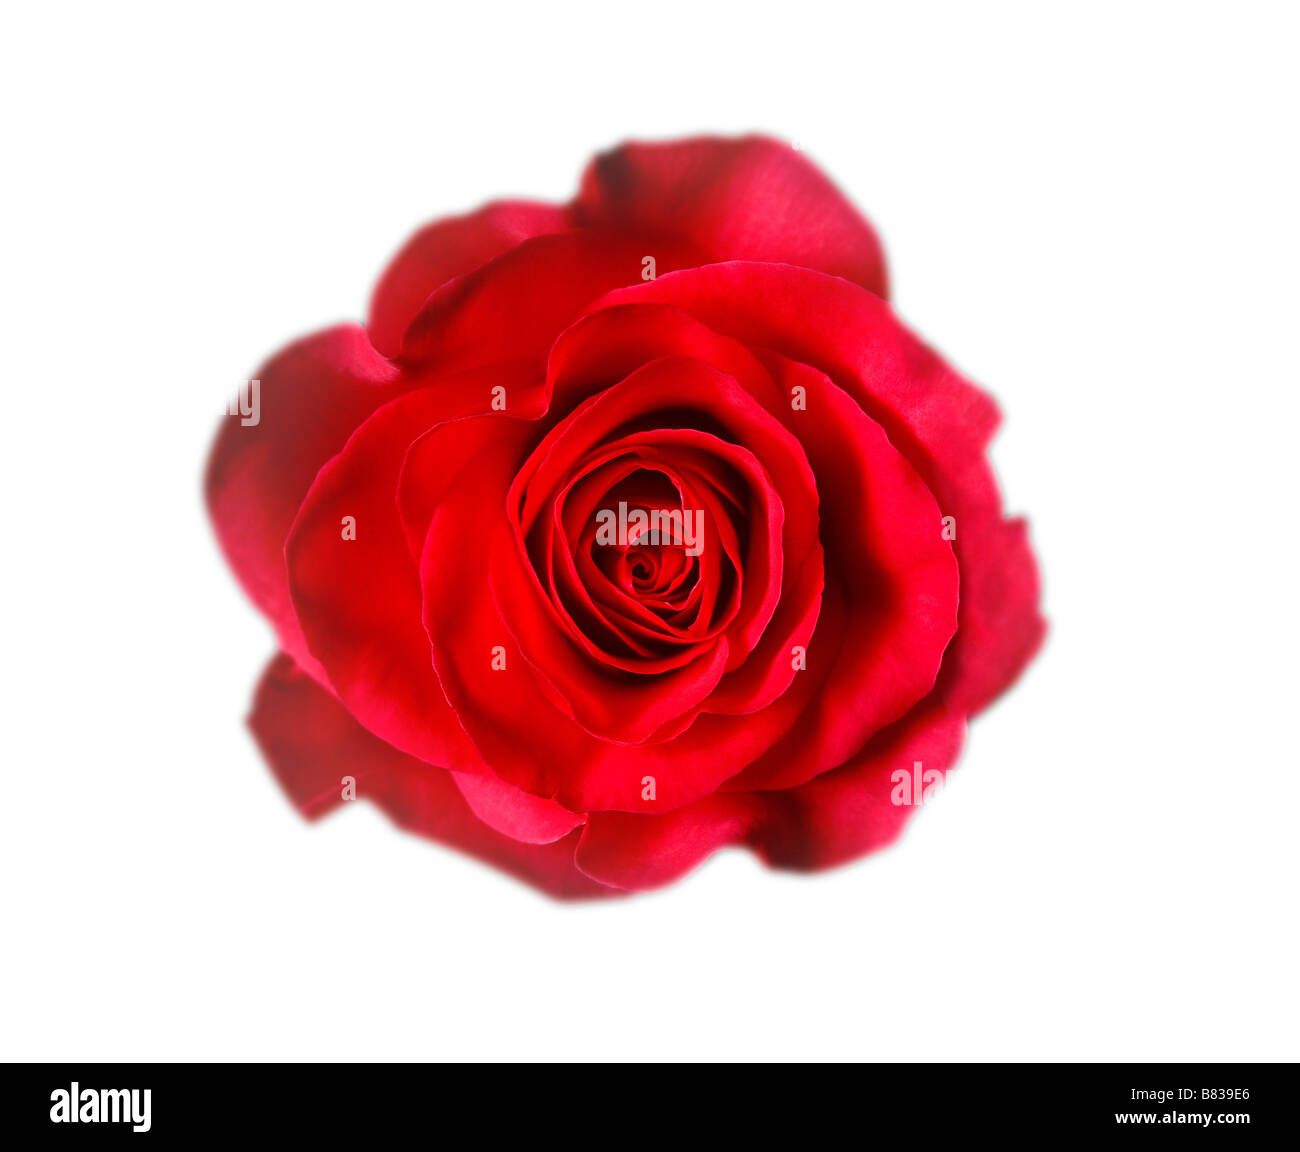 rote Rose auf weißen Studio-Hintergrund zeigt das Herz oder die Mitte der Rose in diesem horizontalen Bildmitte Stockfoto